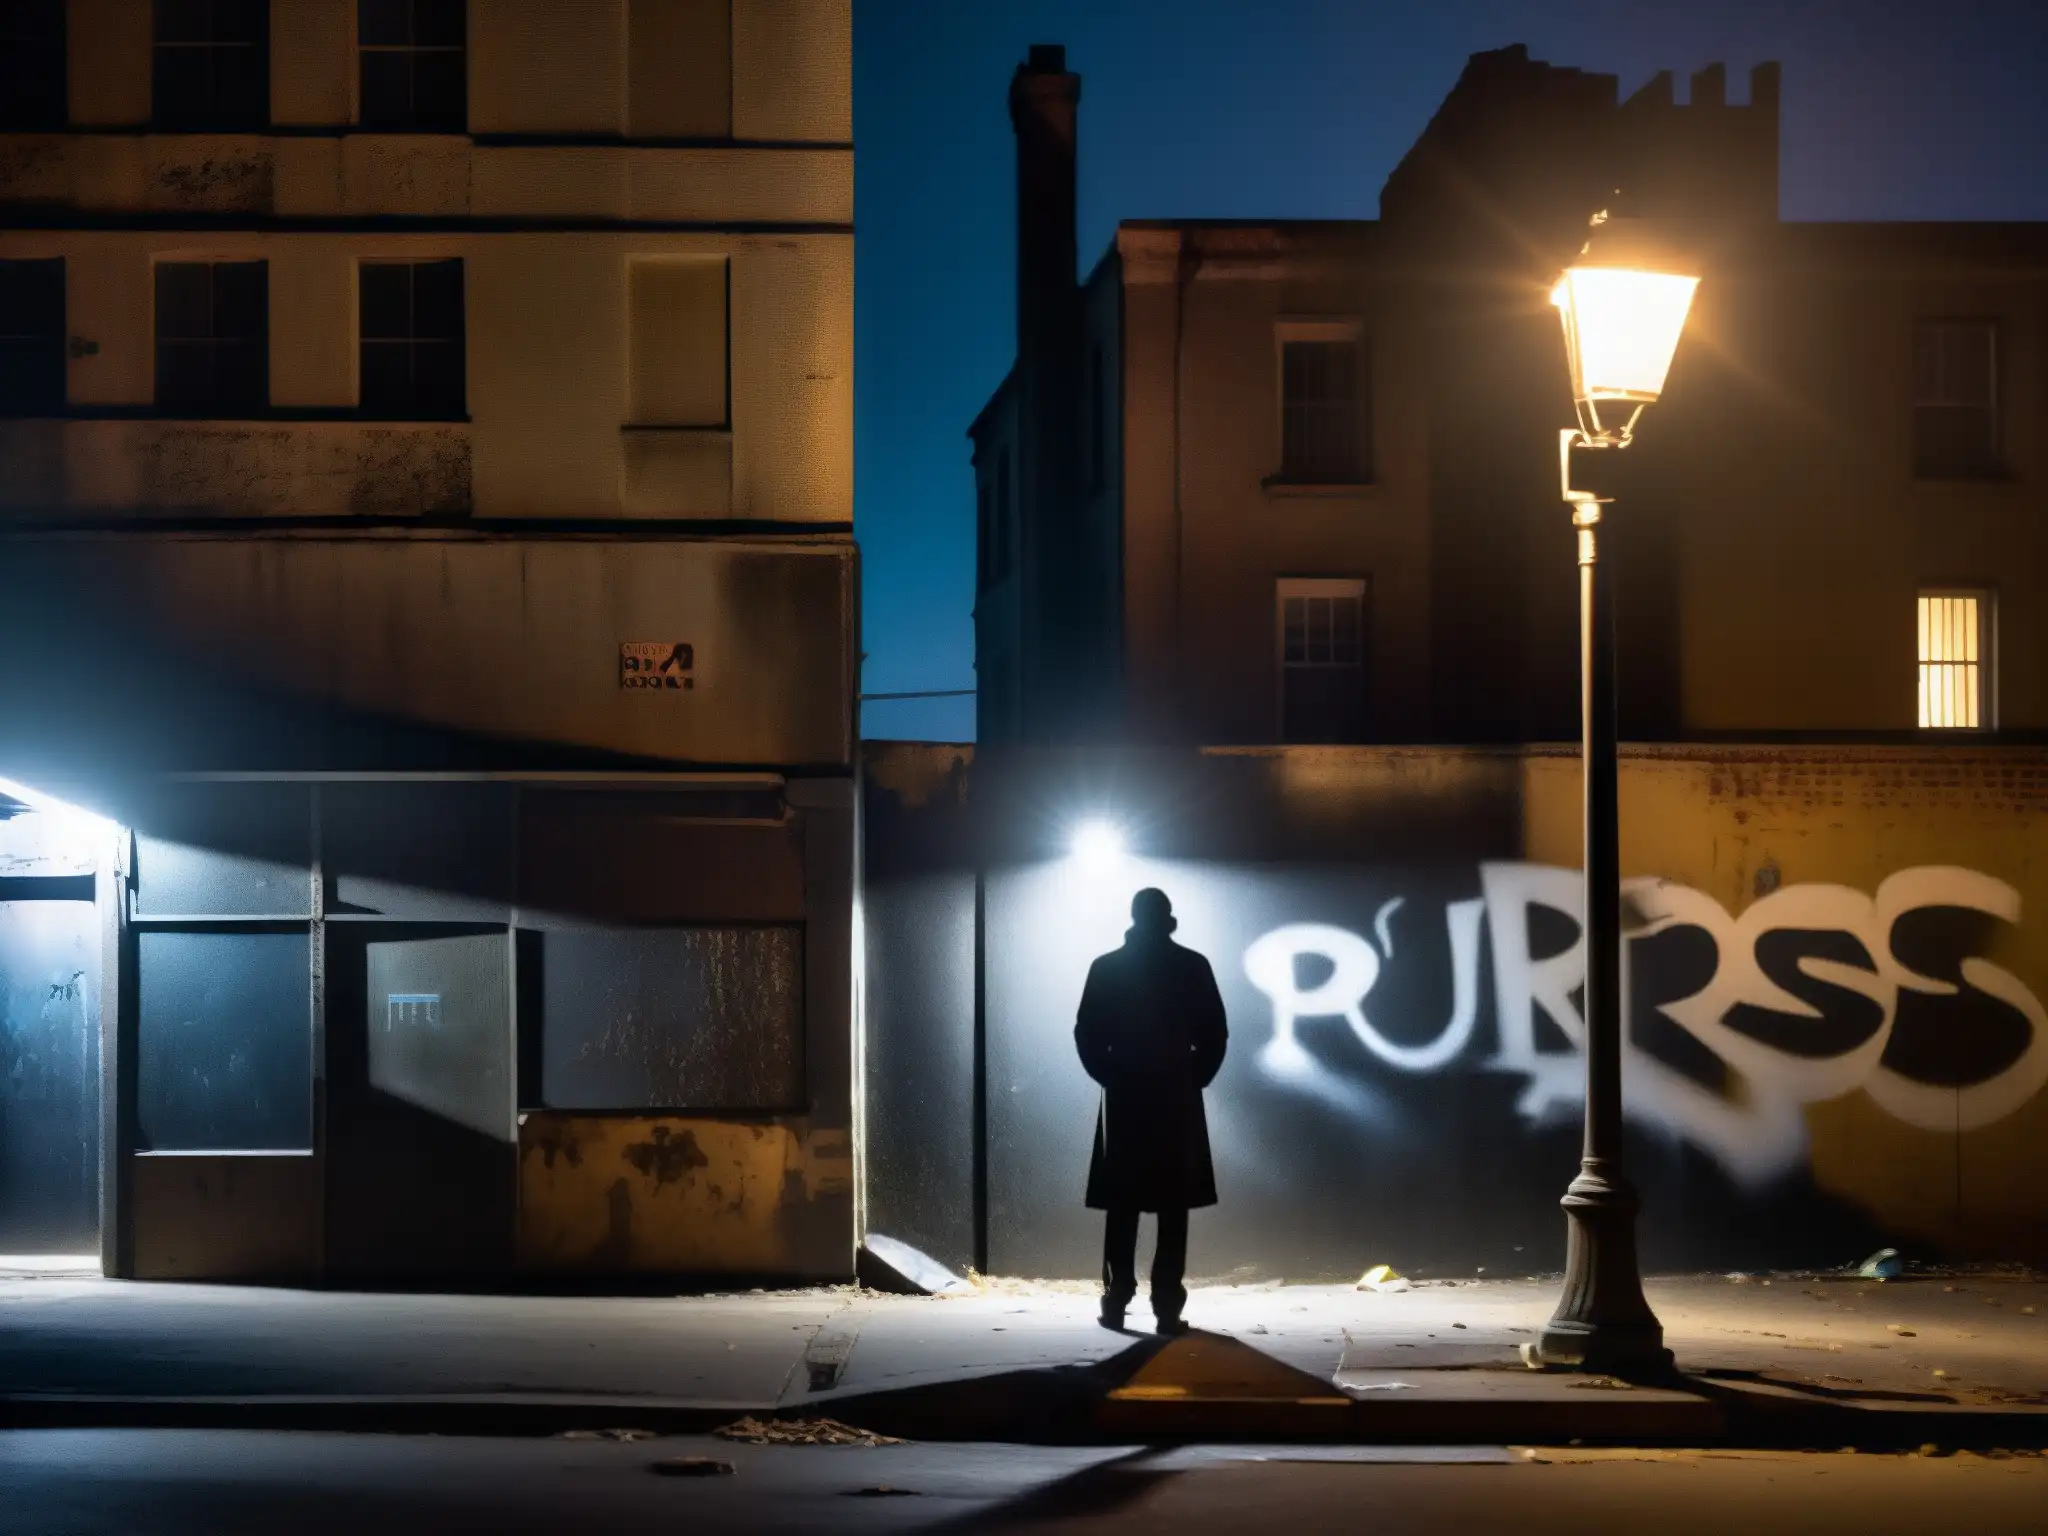 Un rincón oscuro de la ciudad de noche, con una figura solitaria bajo la luz tenue de una farola, evocando relaciones tóxicas y leyendas urbanas